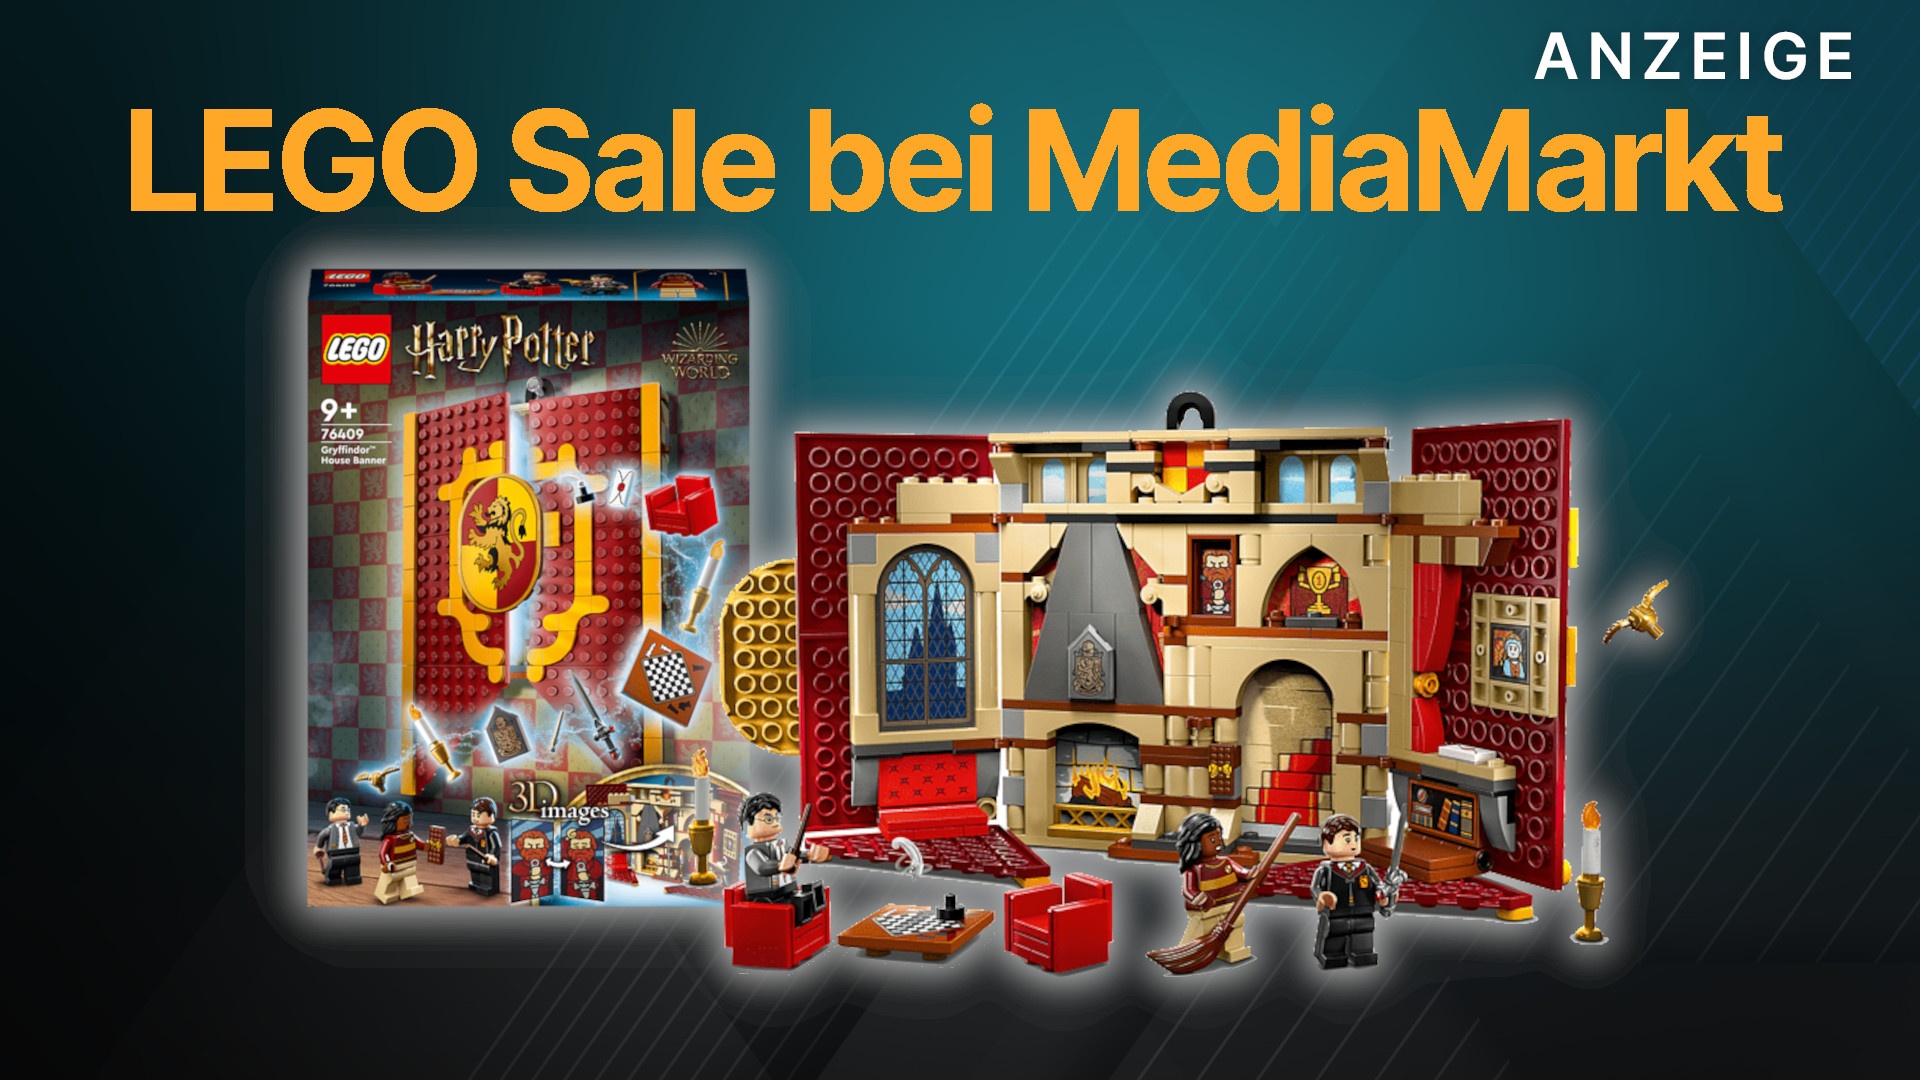 LEGO bei MediaMarkt: Sets zu Harry Mario Minecraft jetzt im Angebot